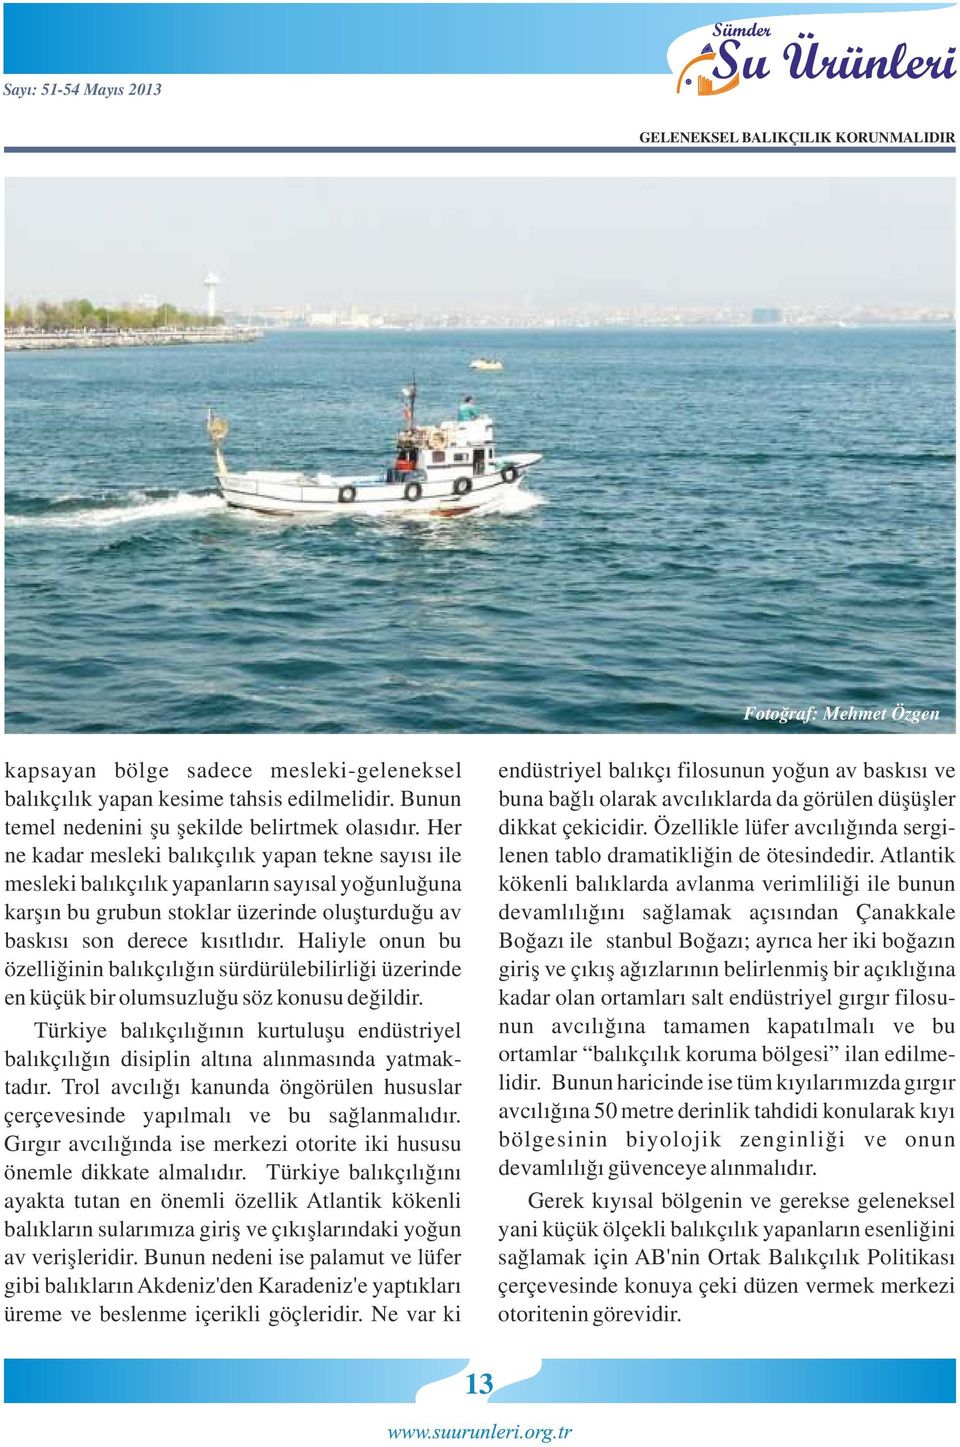 Atlantik kökenli balıklarda avlanma verimliliği ile bunun devamlılığını sağlamak açısından Çanakkale Boğazı ile İstanbul Boğazı; ayrıca her iki boğazın giriş ve çıkış ağızlarının belirlenmiş bir